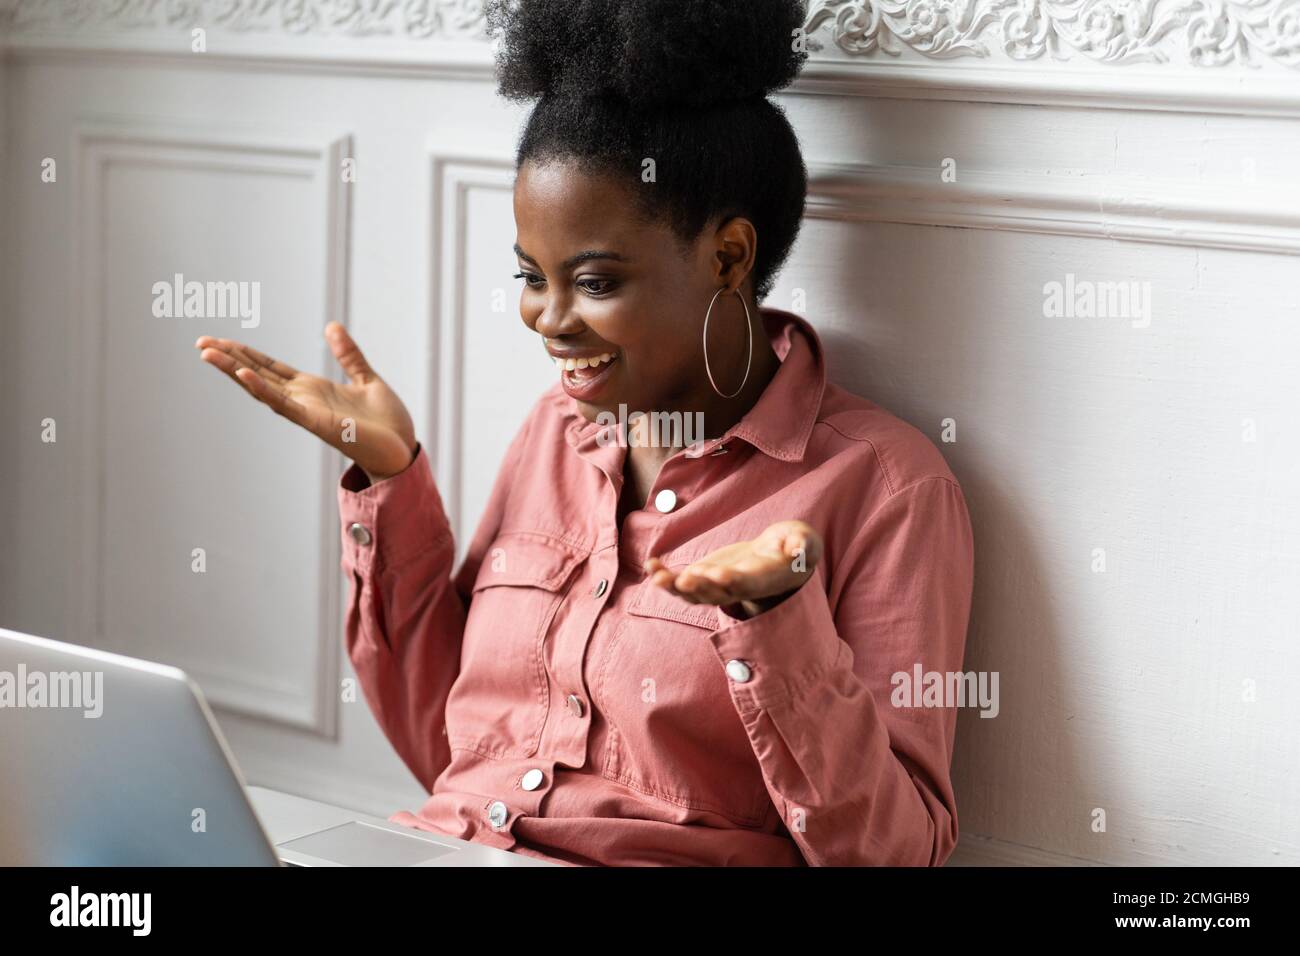 Femme biraciale millénaire africaine américaine avec une coiffure afro travaillant sur ordinateur portable, faisant des gestes avec les mains, regardant la webcam de la caméra et bavardant et parlant Banque D'Images